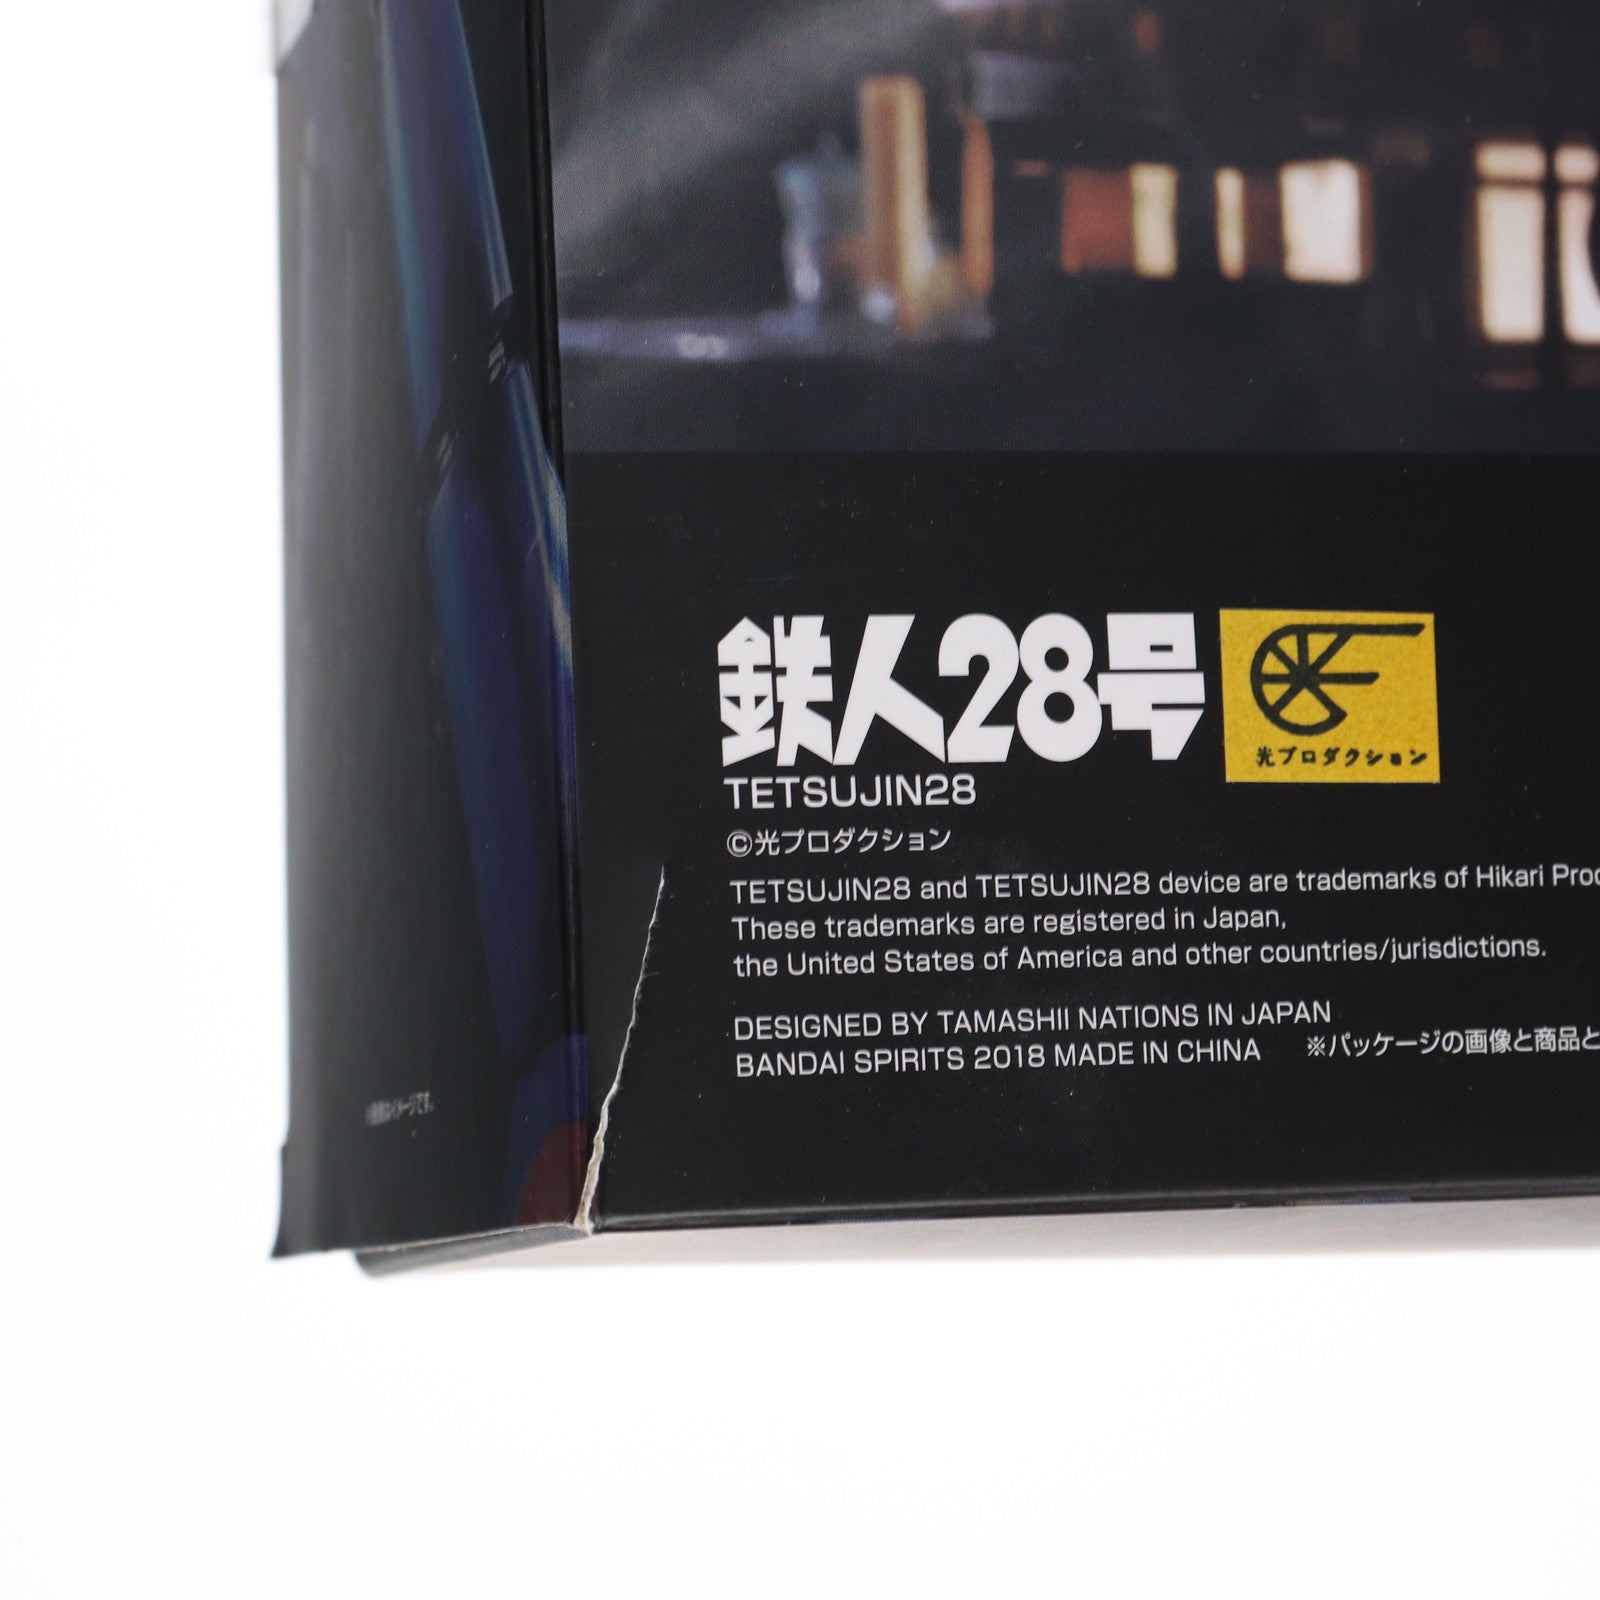 【中古即納】[TOY]超合金魂 GX-24R 鉄人28号 『鉄人28号』(1963) 楽曲搭載バージョン 完成トイ バンダイスピリッツ(20200919)